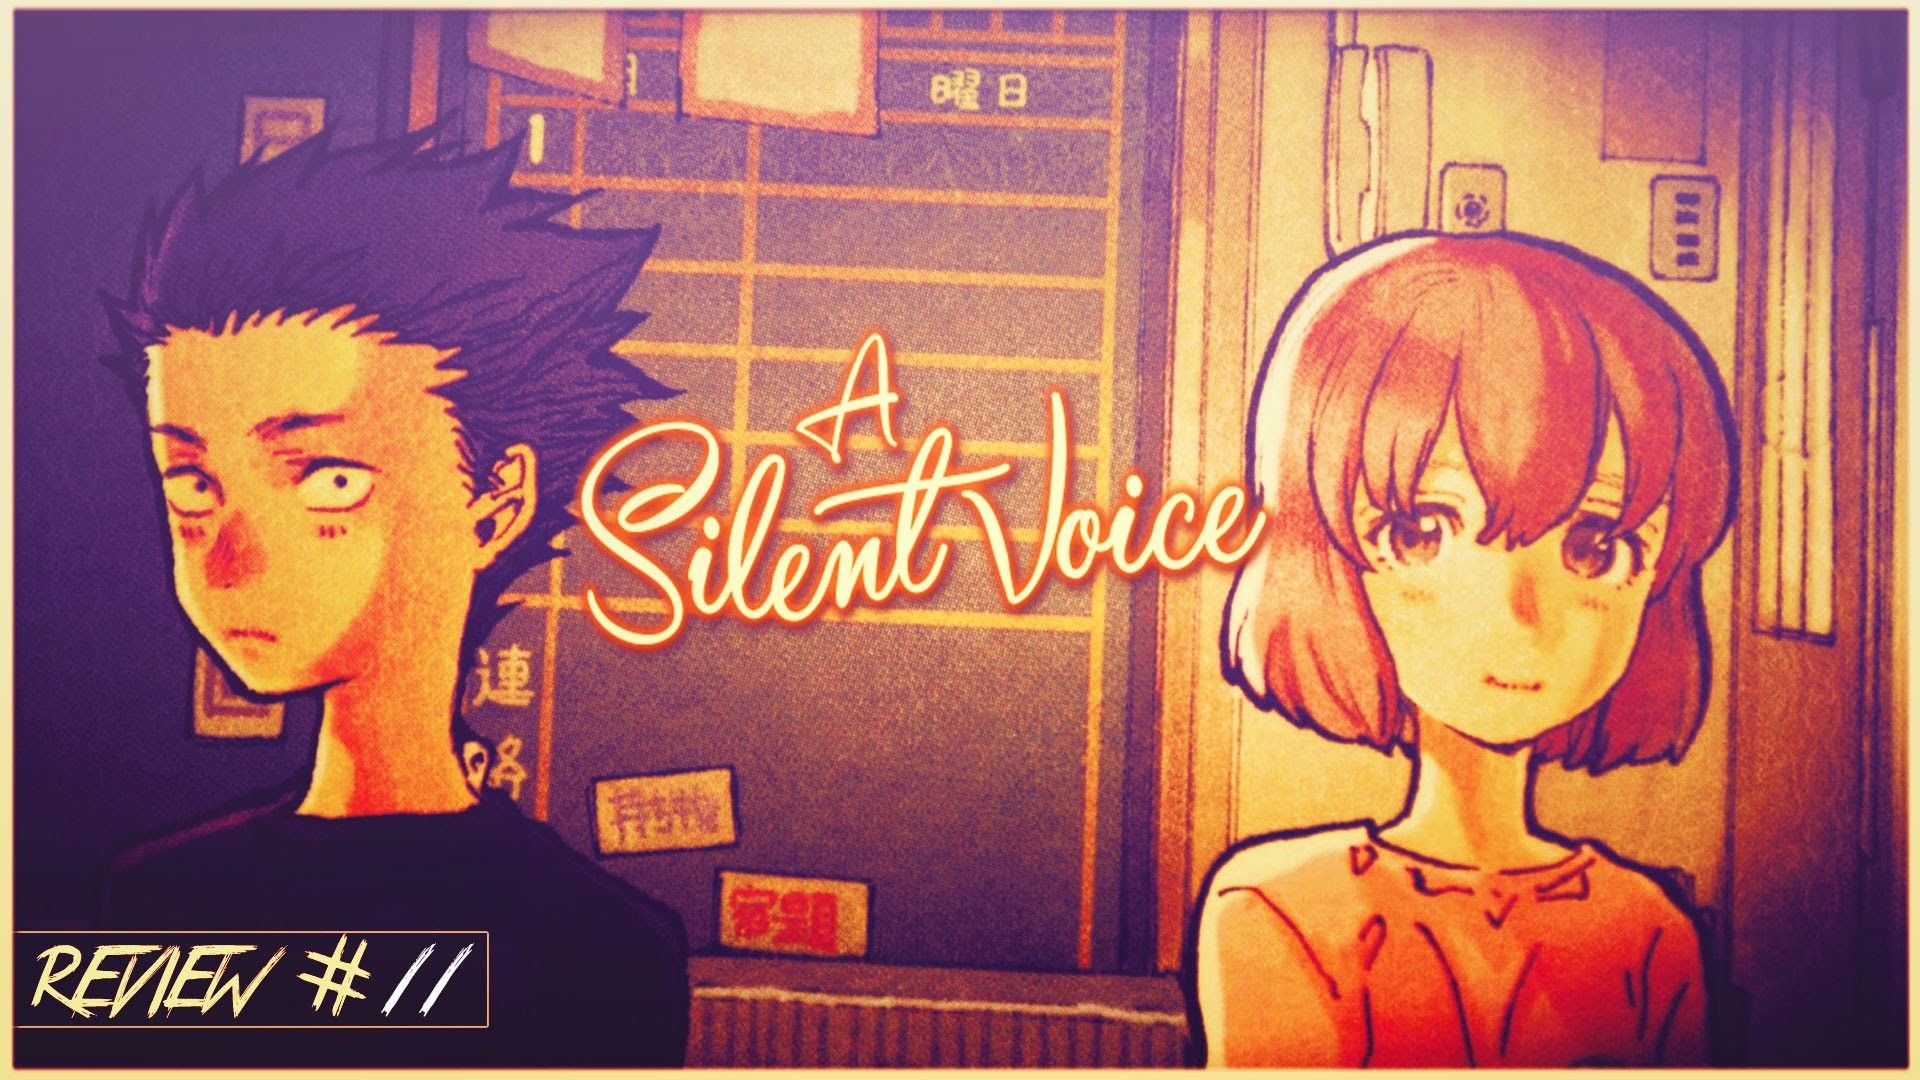 1920x1080 A SILENT VOICE | L'appel gracieux d'un manga sans voix | [REVIEW 11]